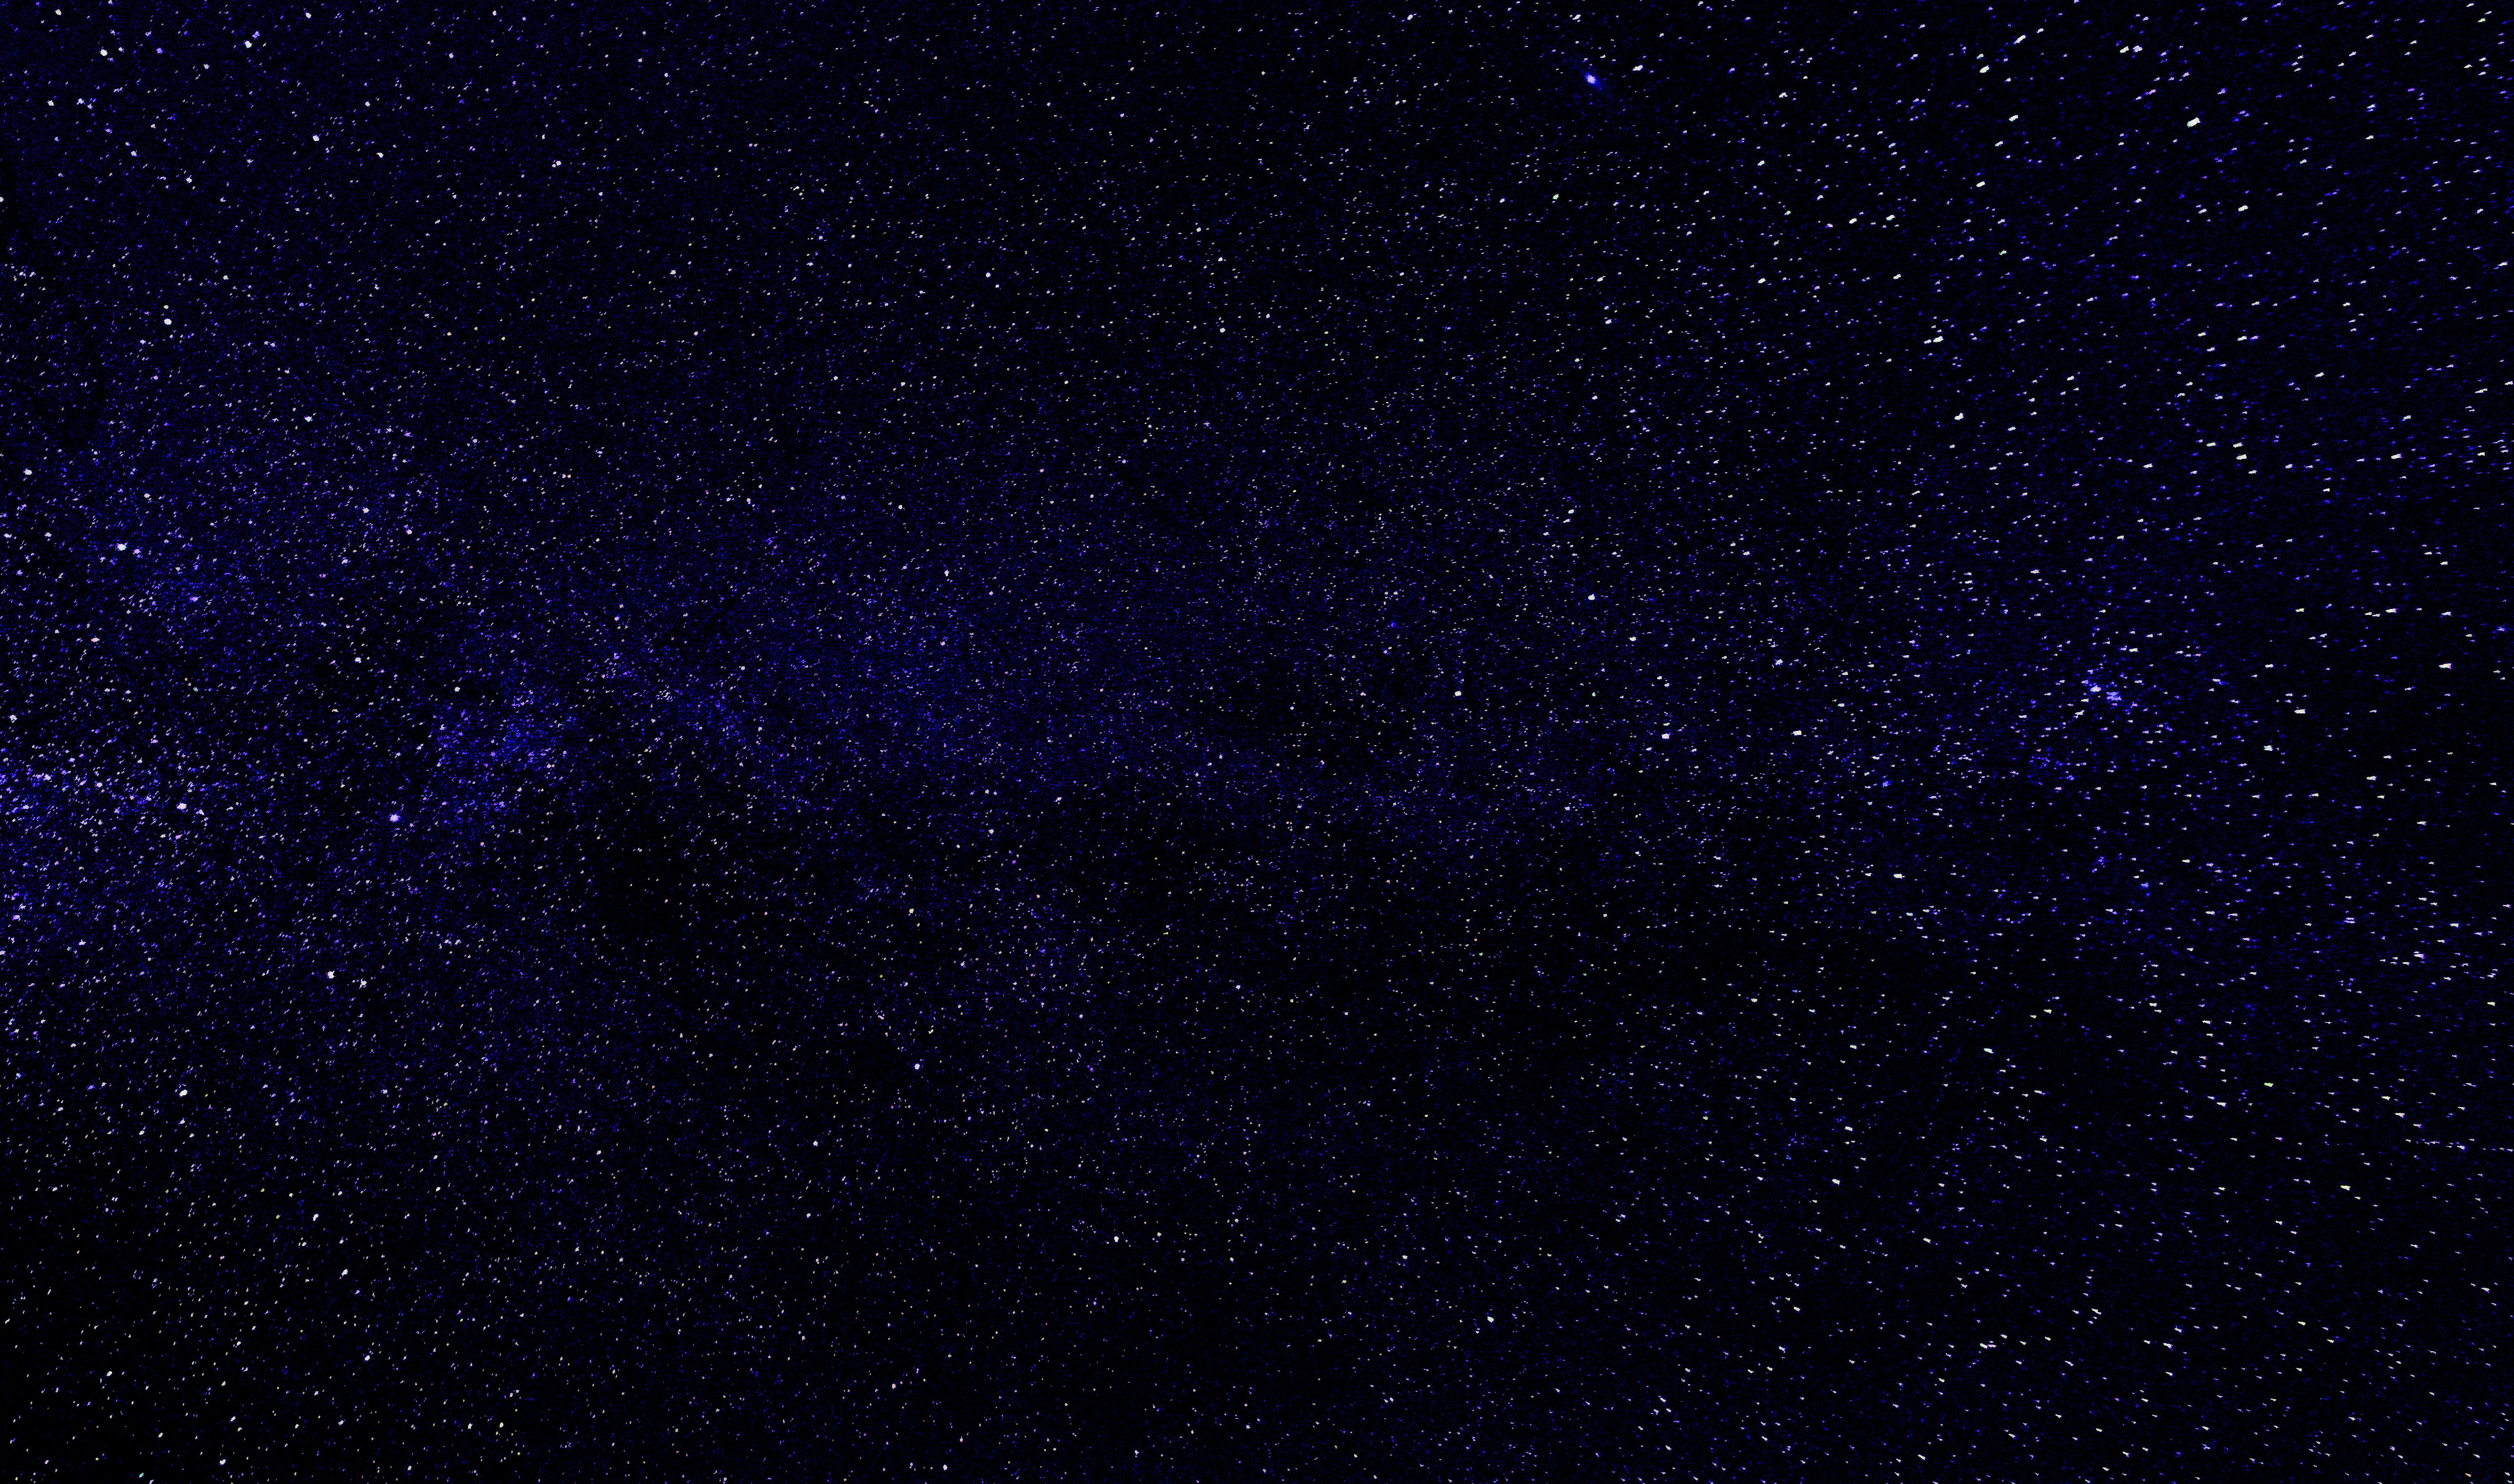 1000+ Engaging Night Sky Photos · Pexels · Free Stock Photos